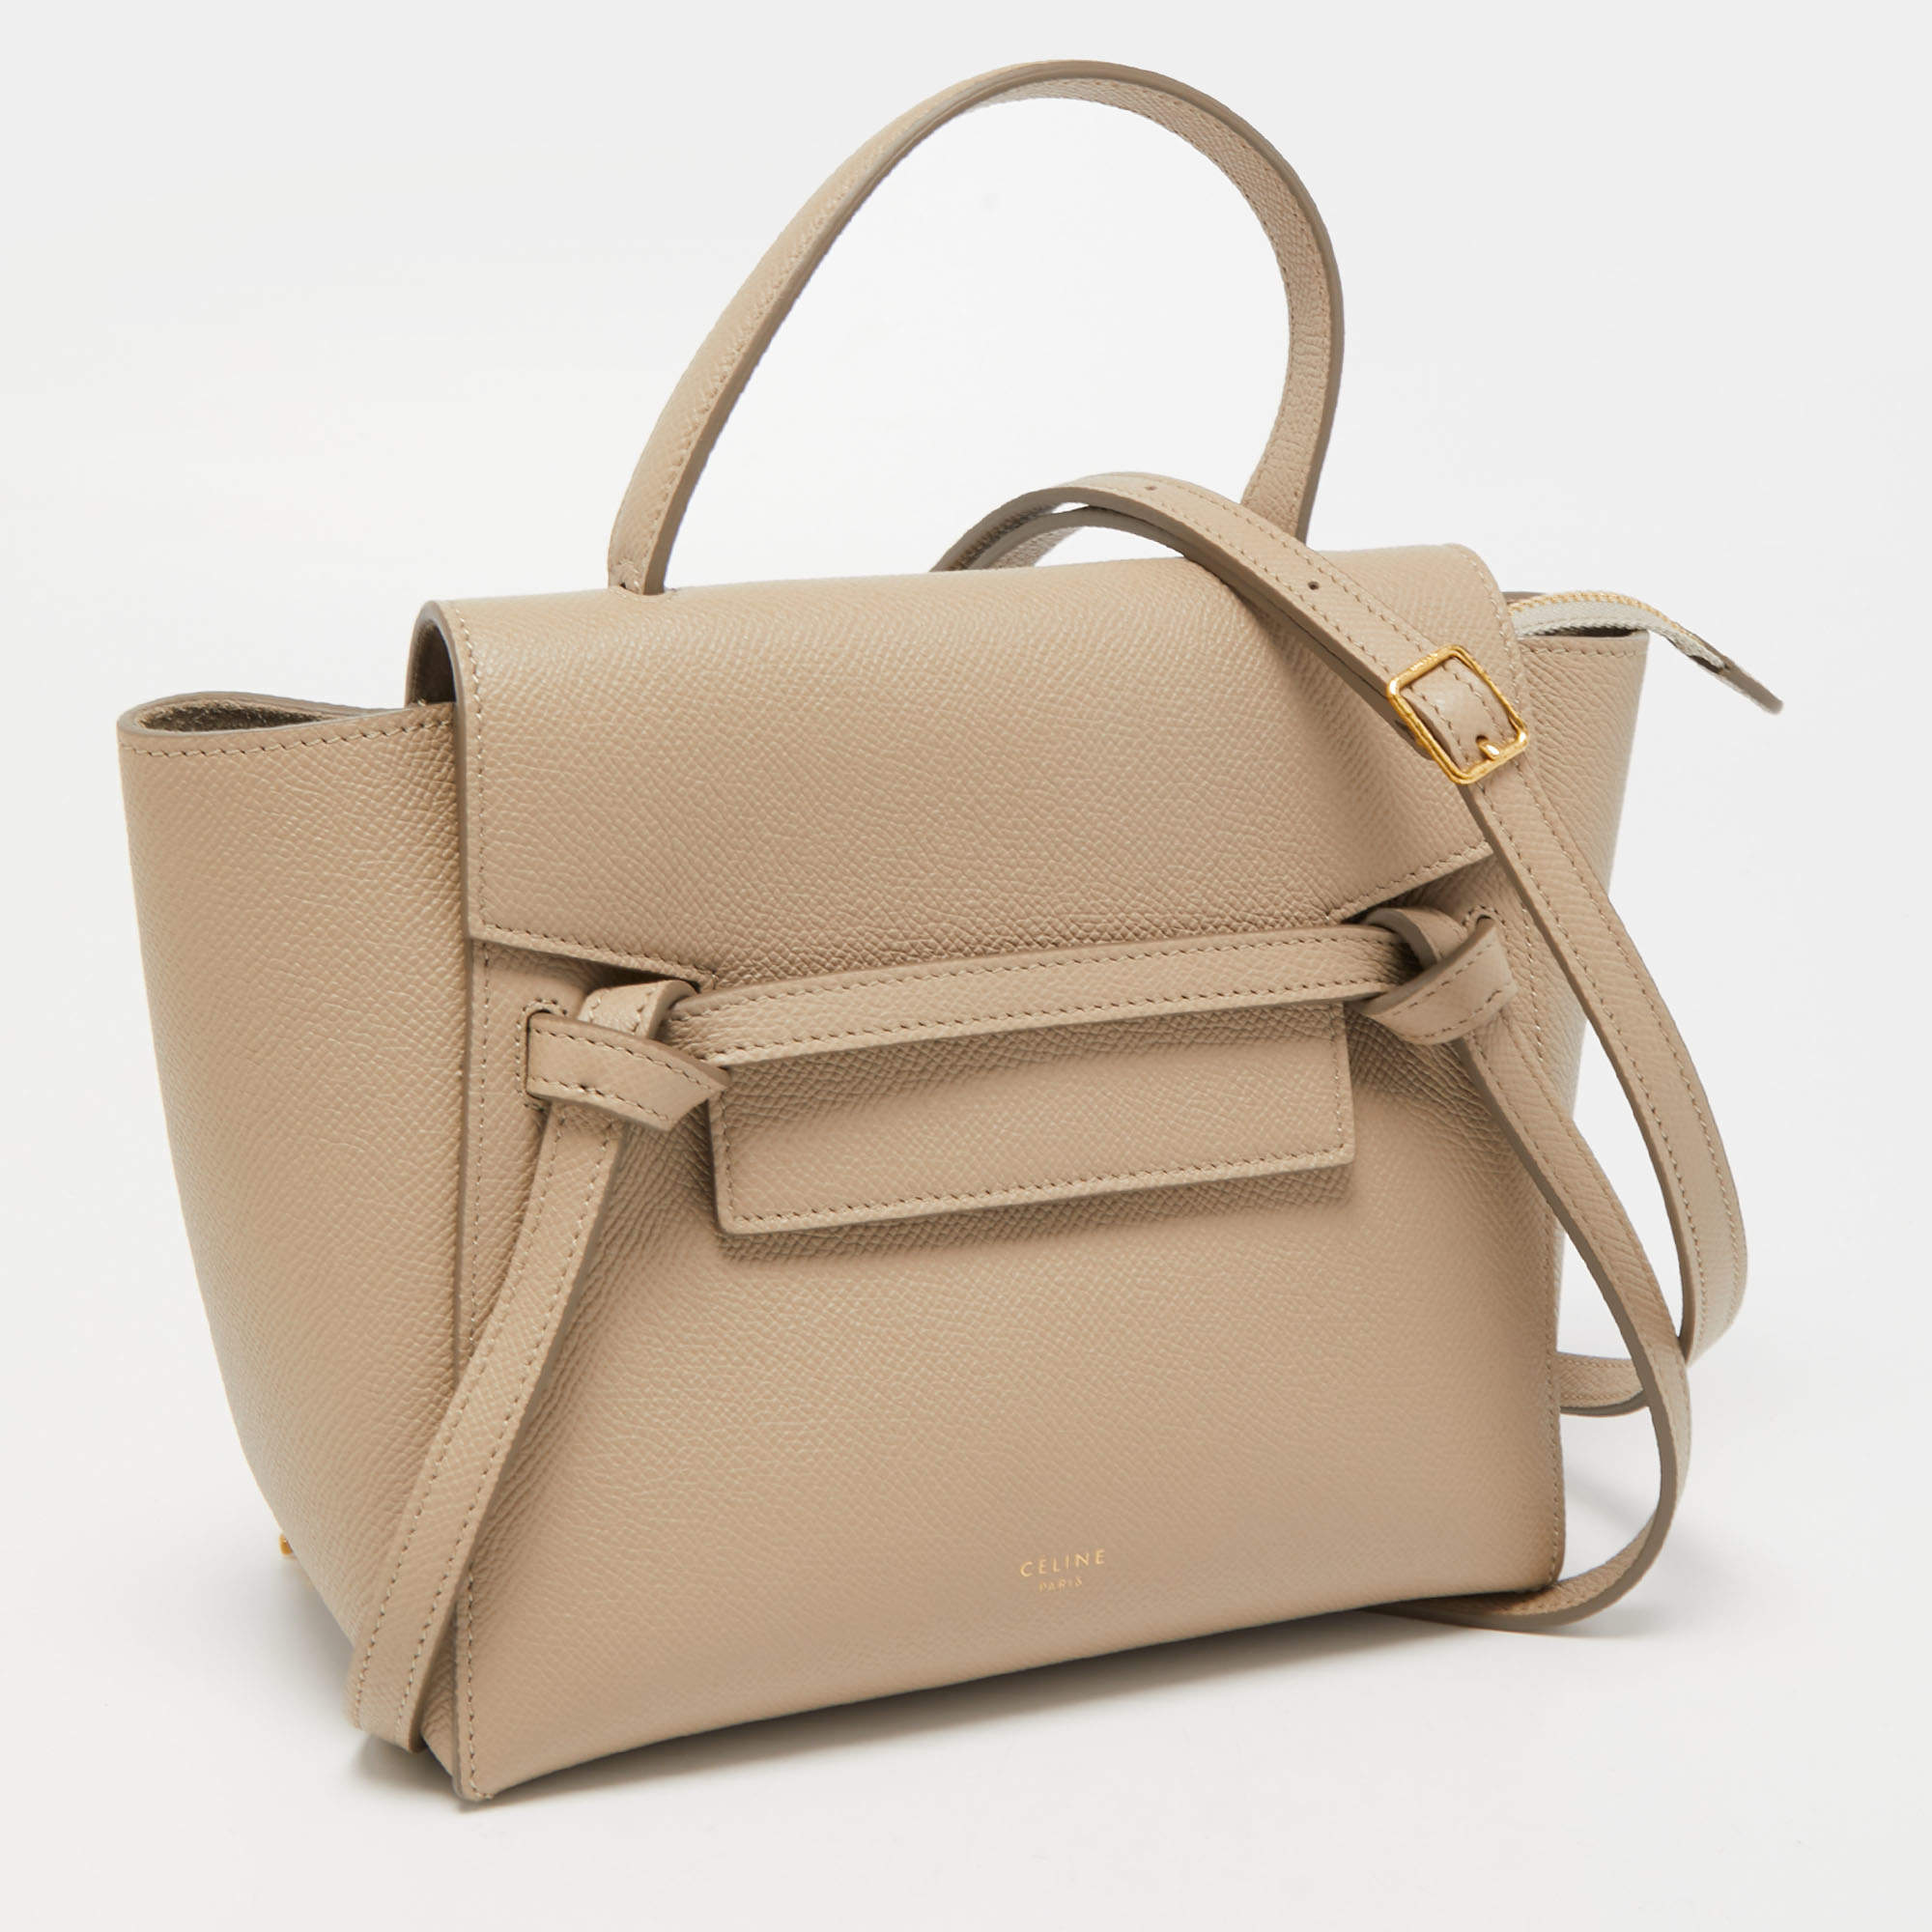 Belt leather handbag Celine Beige in Leather - 30892875